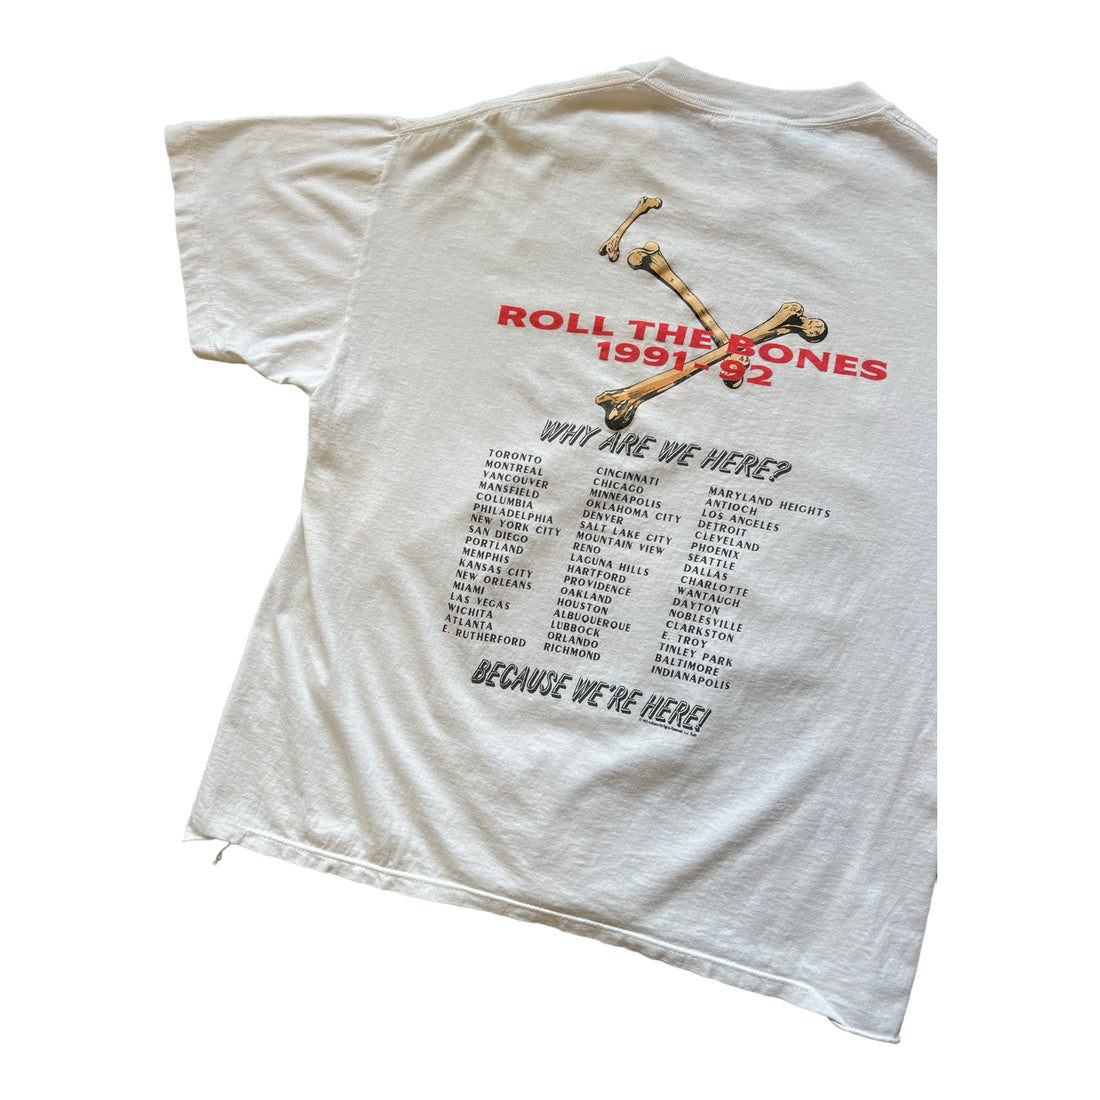 1991 RUSH "ROLL THE BONES" TOUR TSHIRT WHITE CROPPED XL - 1990S